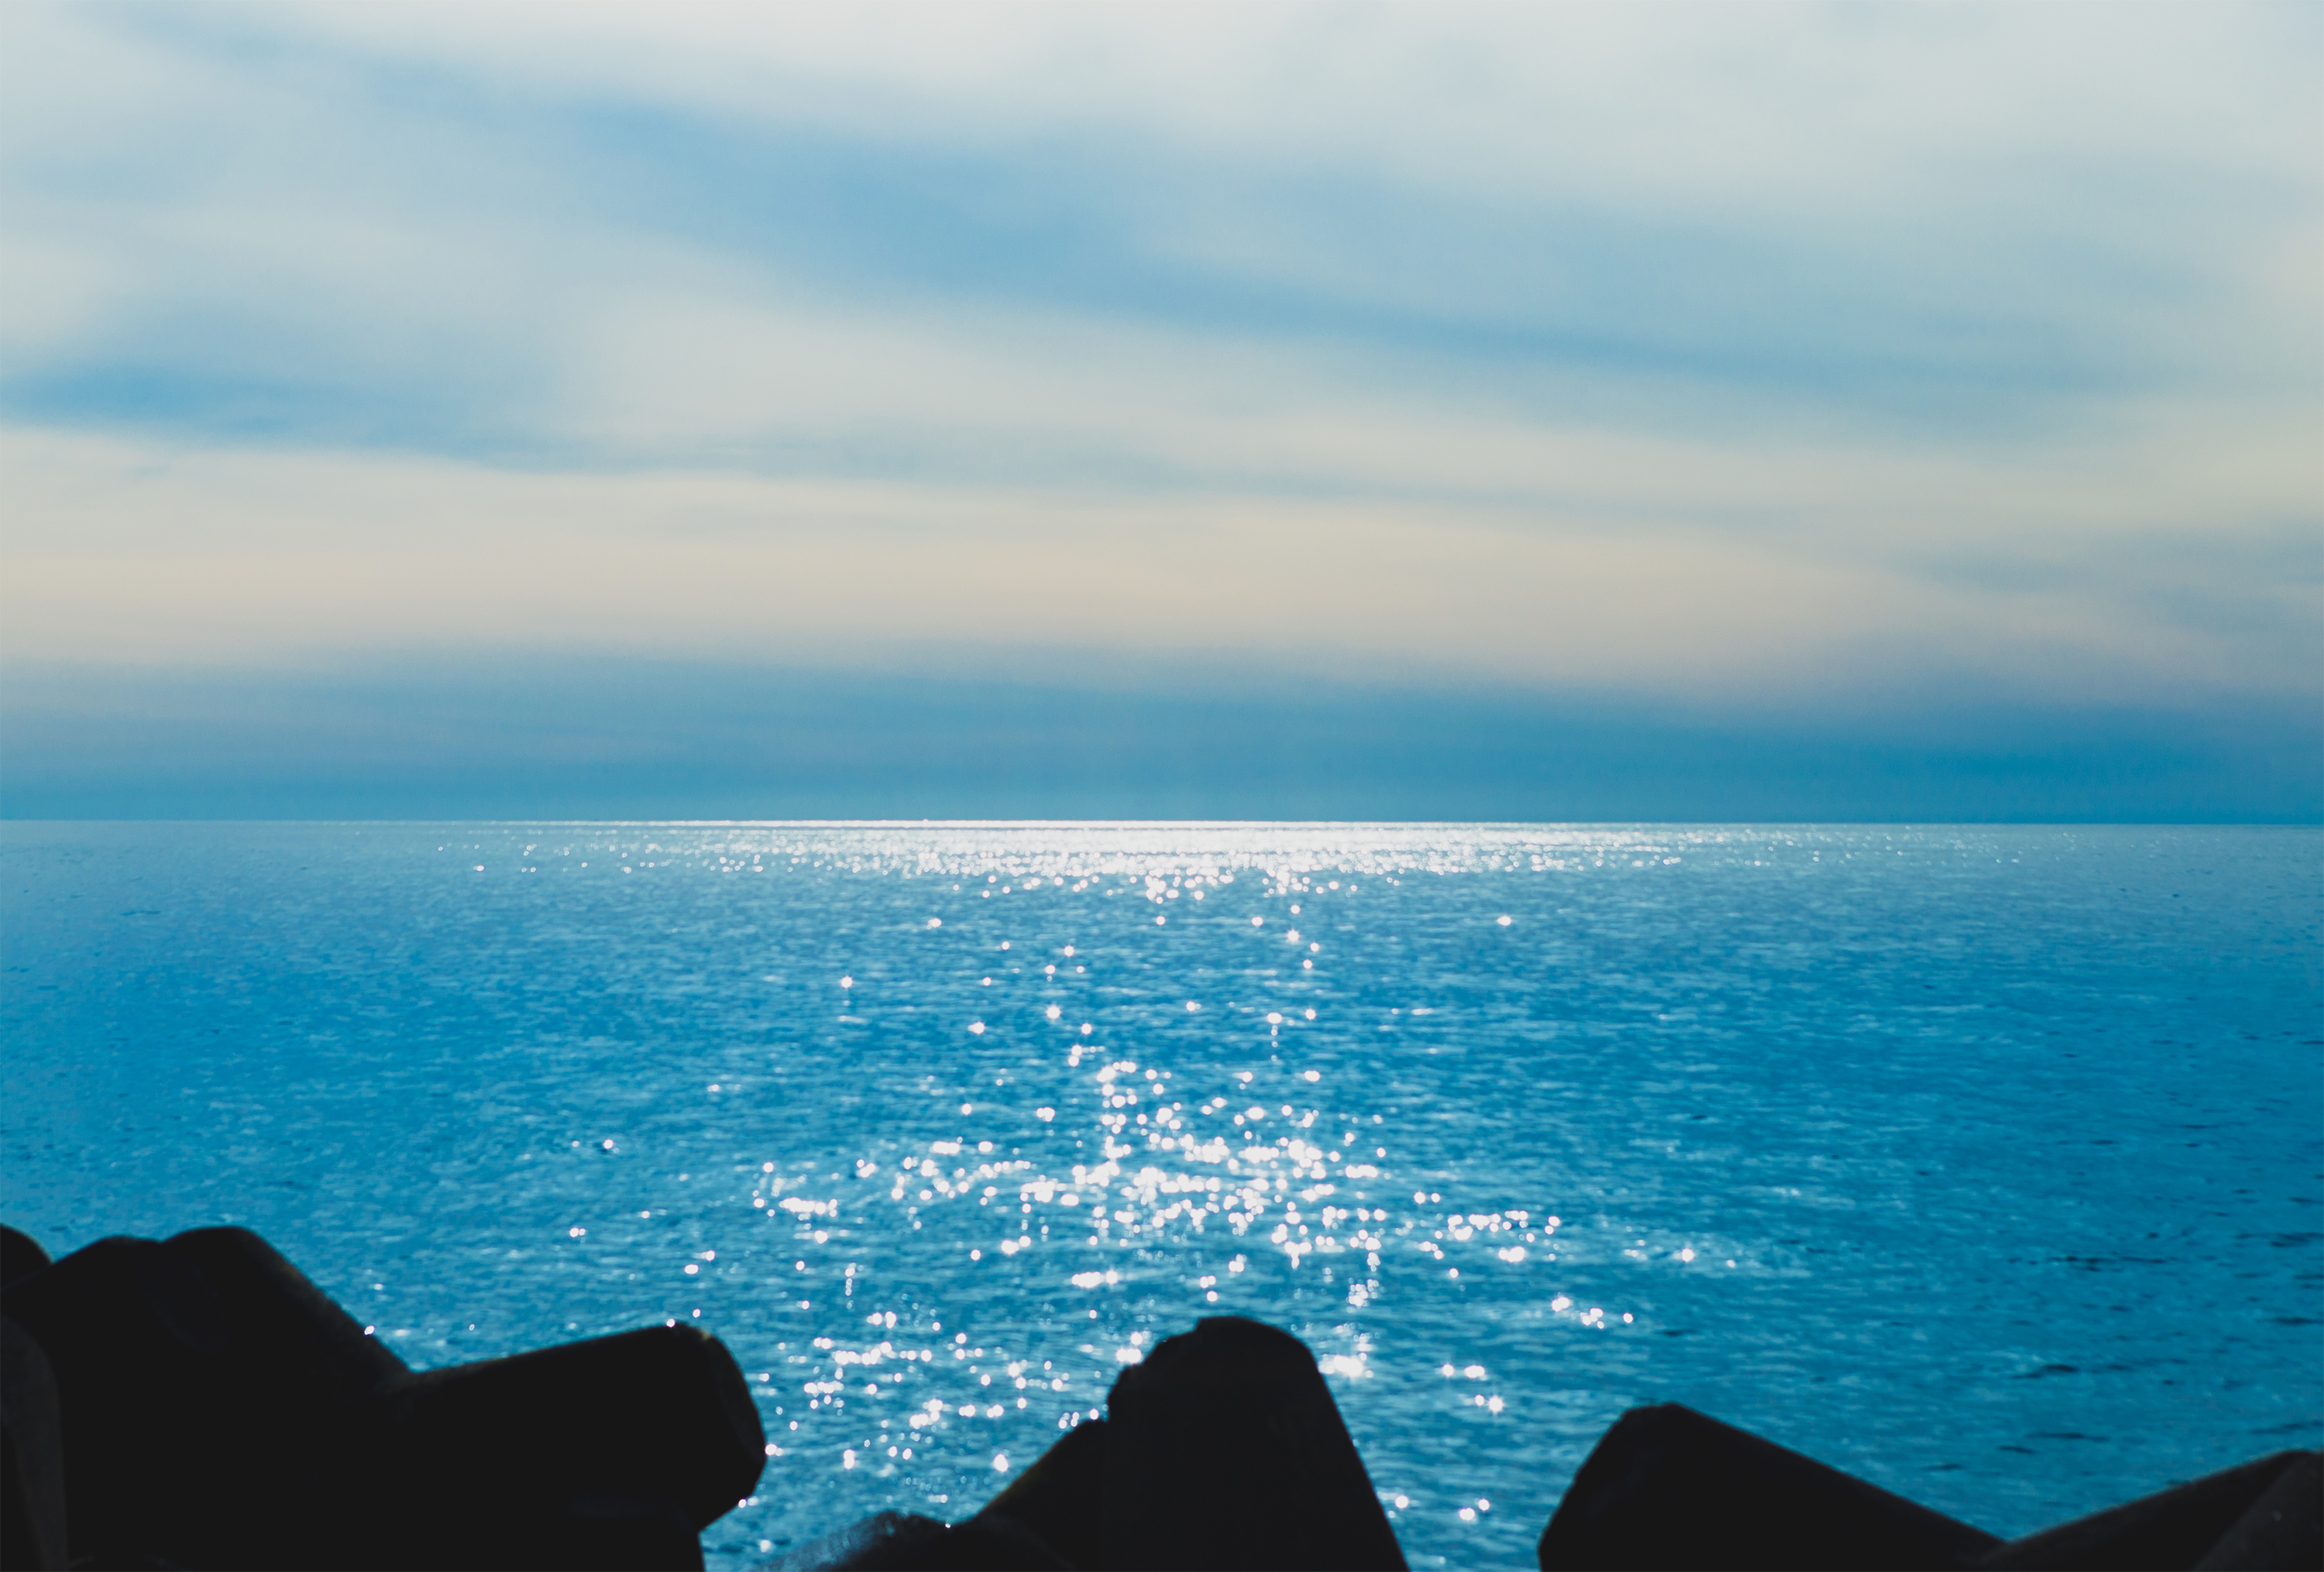 太陽光が海面にキラキラ反射している風景02 無料の高画質フリー写真素材 イメージズラボ